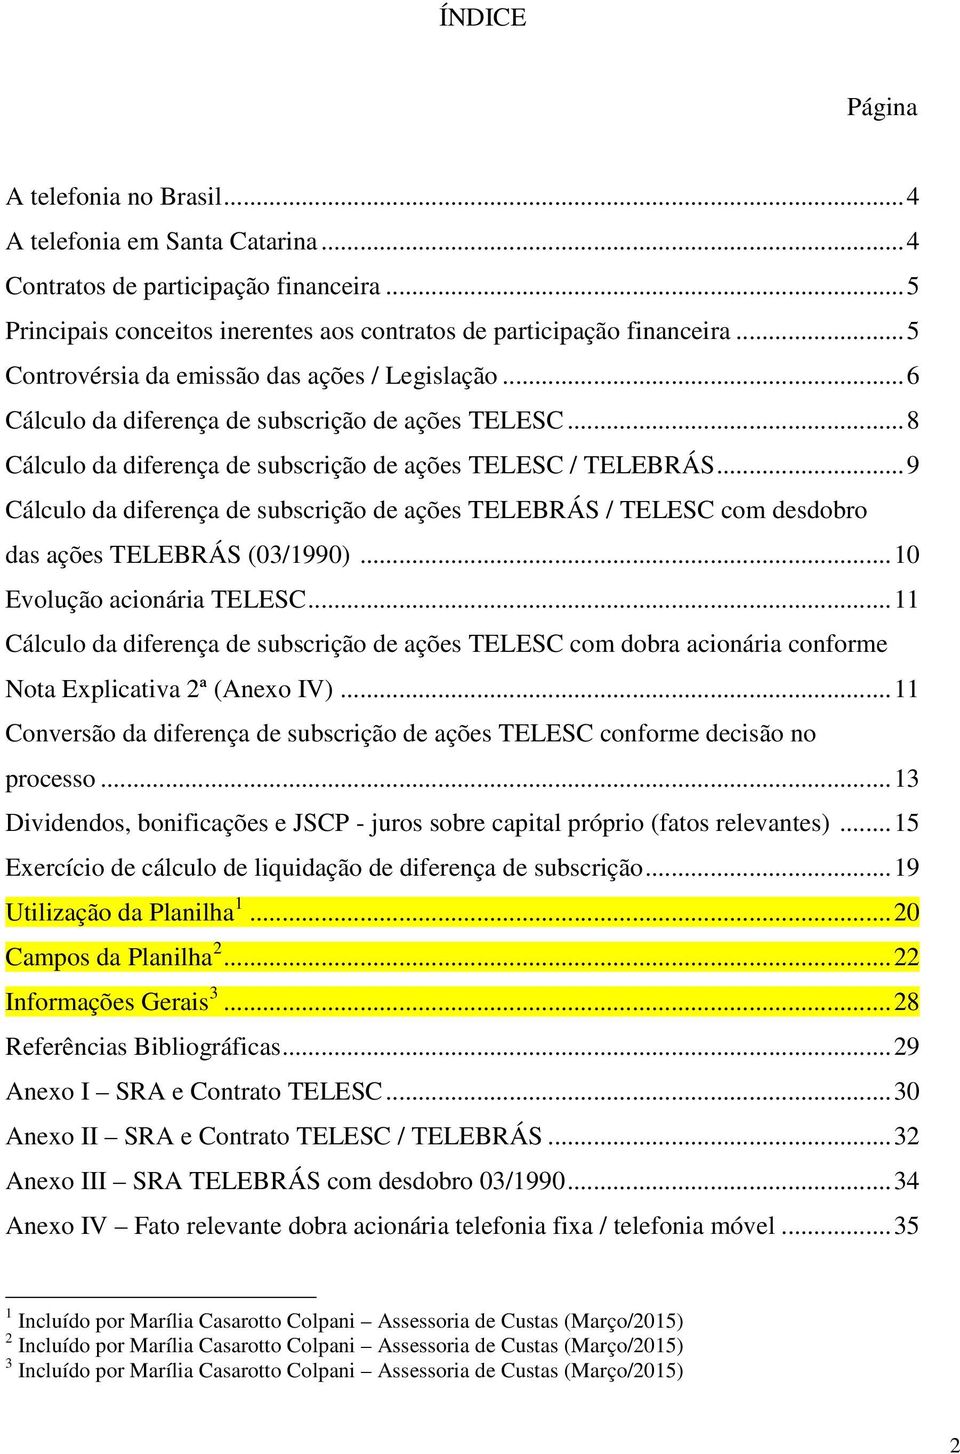 .. 9 Cálculo da diferença de subscrição de ações TELEBRÁS / TELESC com desdobro das ações TELEBRÁS (03/1990)... 10 Evolução acionária TELESC.